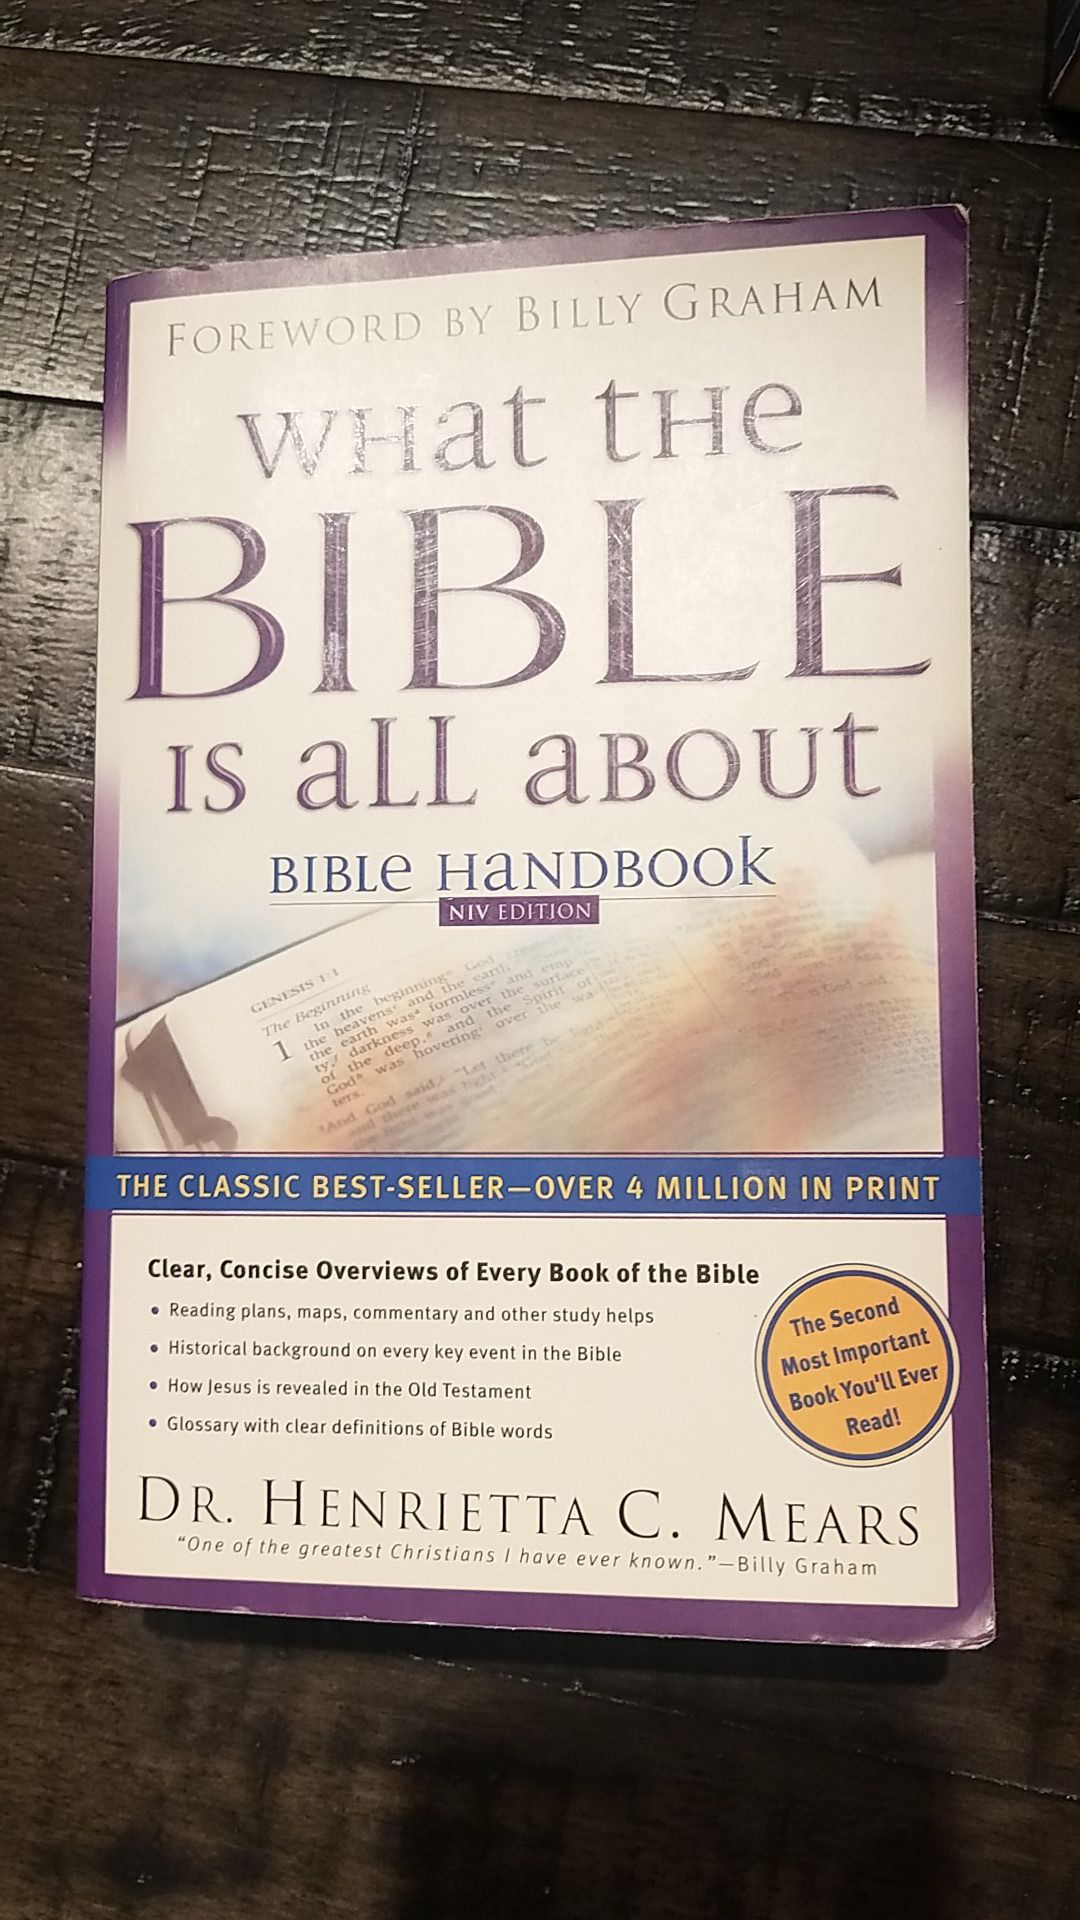 Bible handbook- Free